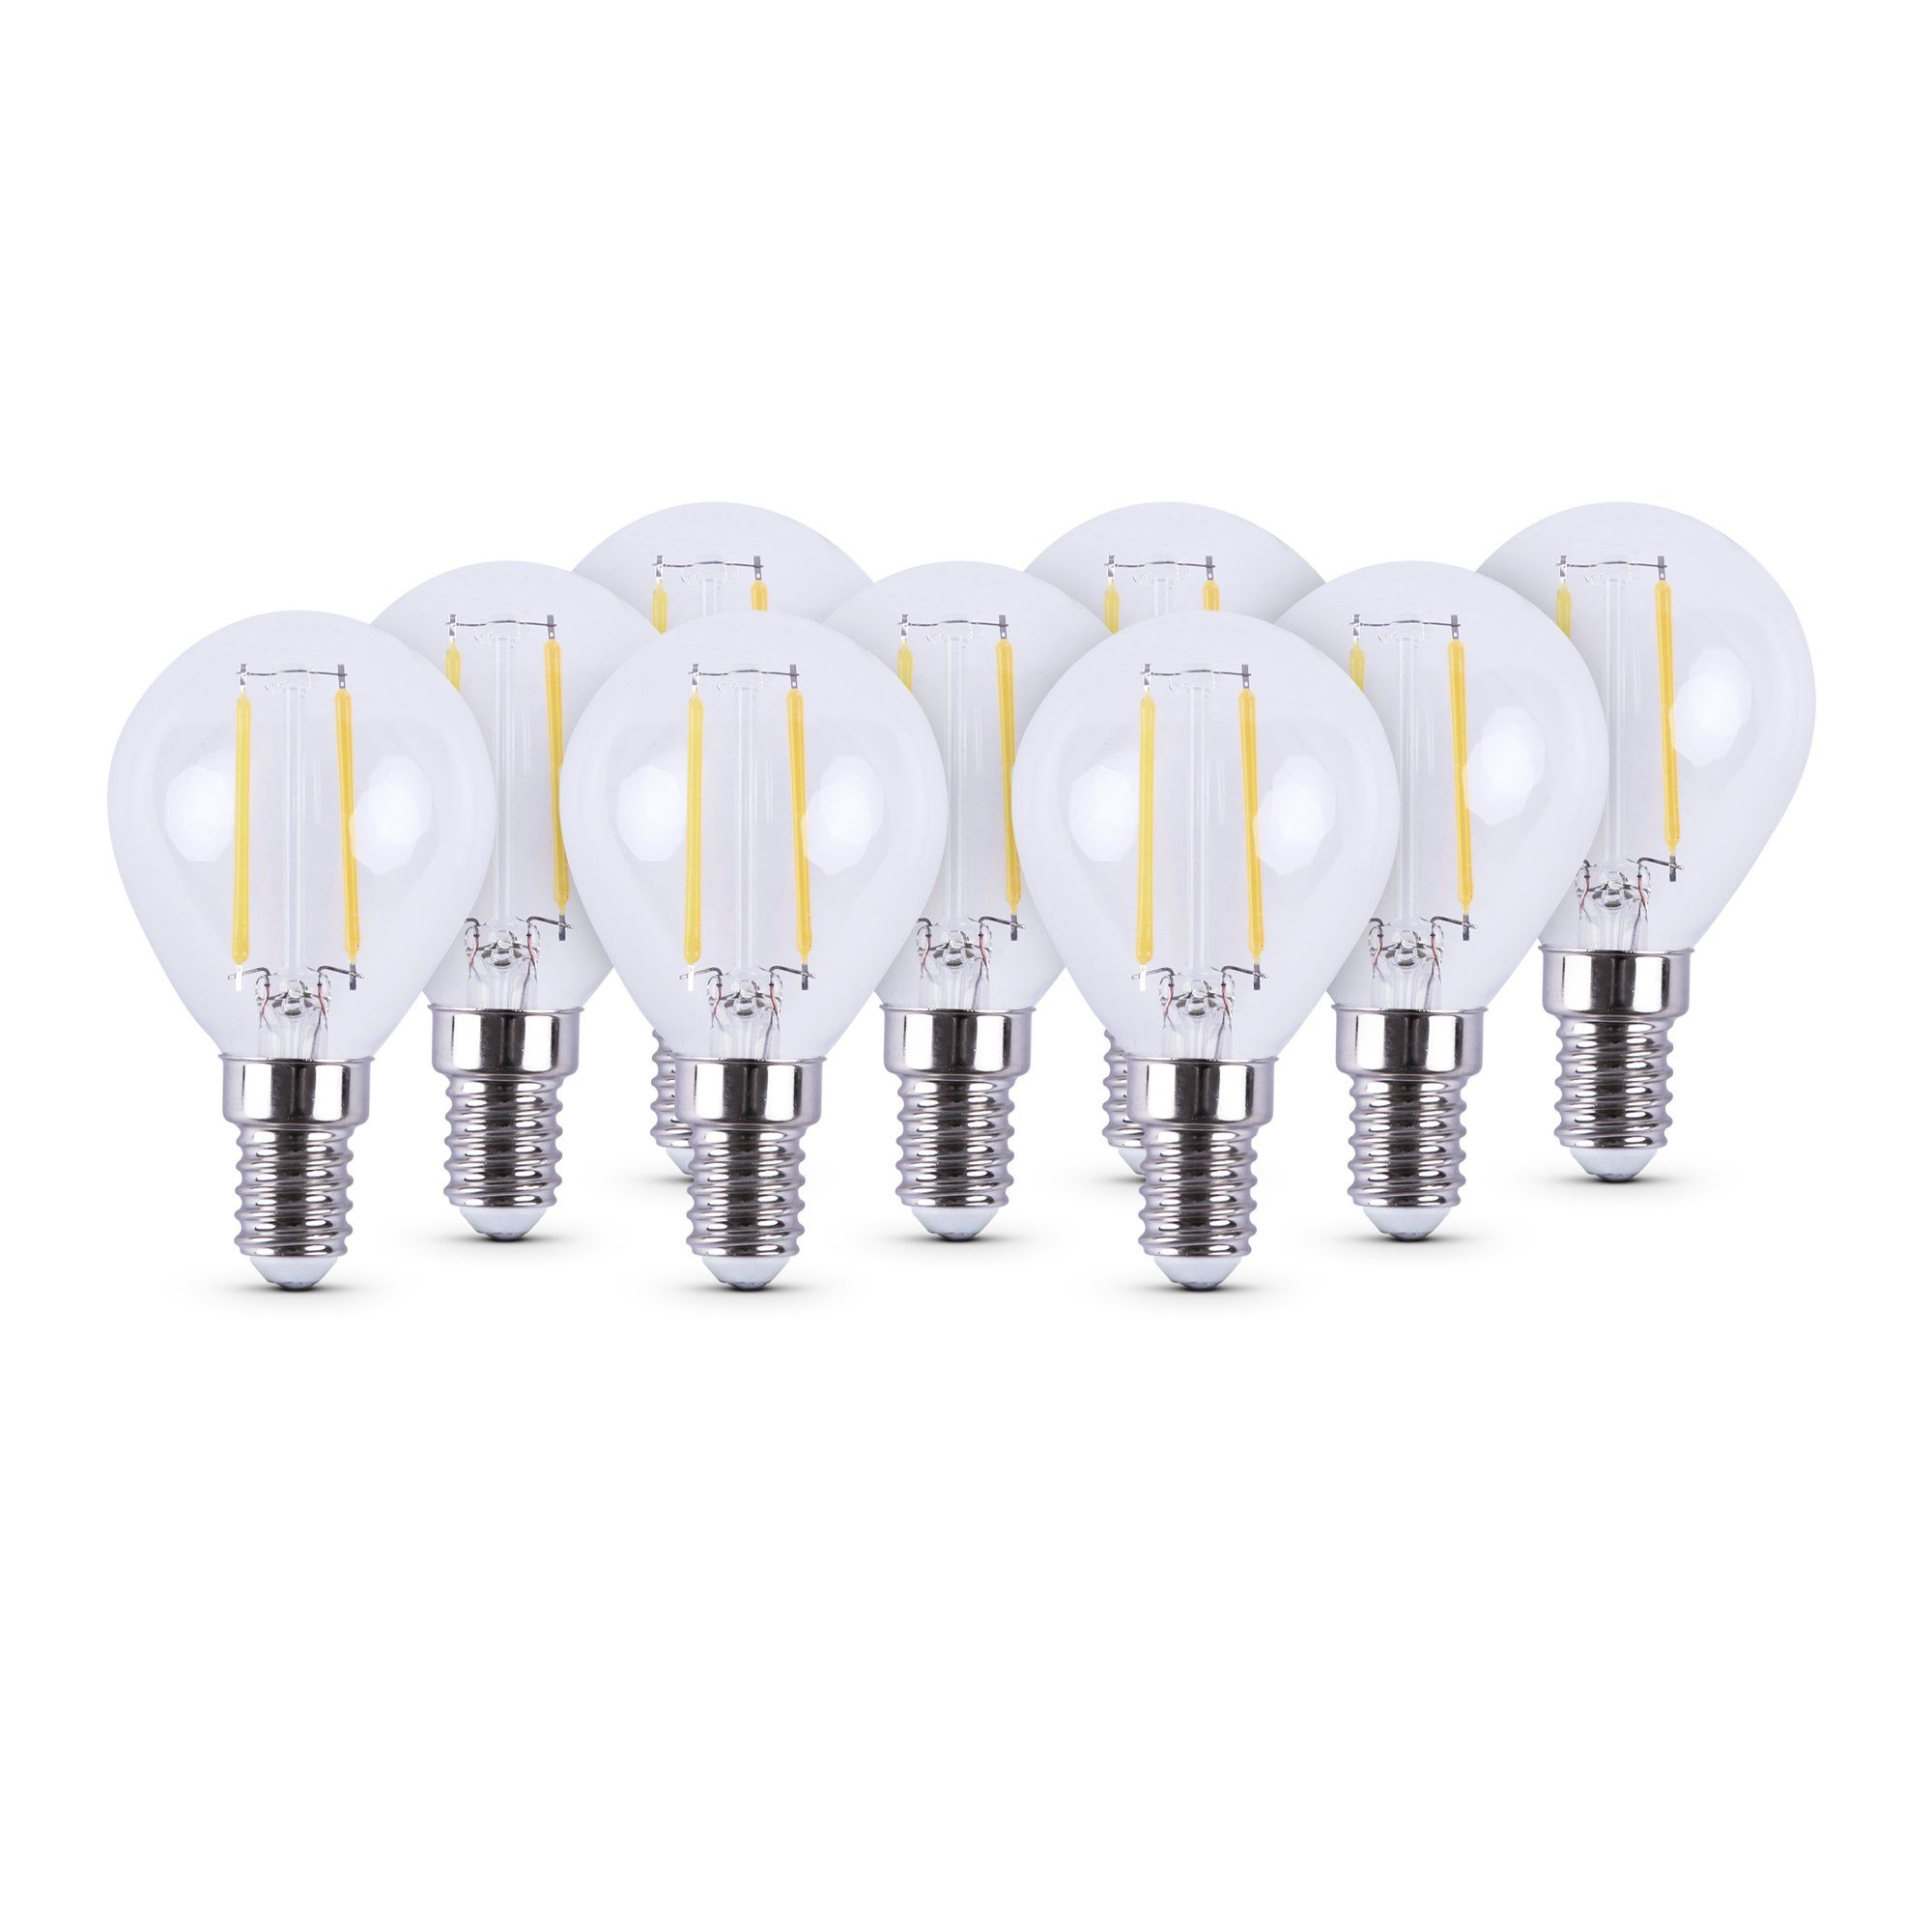 Bestlivings LED-Leuchtmittel 77202 Glühbirne, E14, 9 St., Warmweiß, Retrolicht Glühlampe LED-Birne 2700K Warmweiß